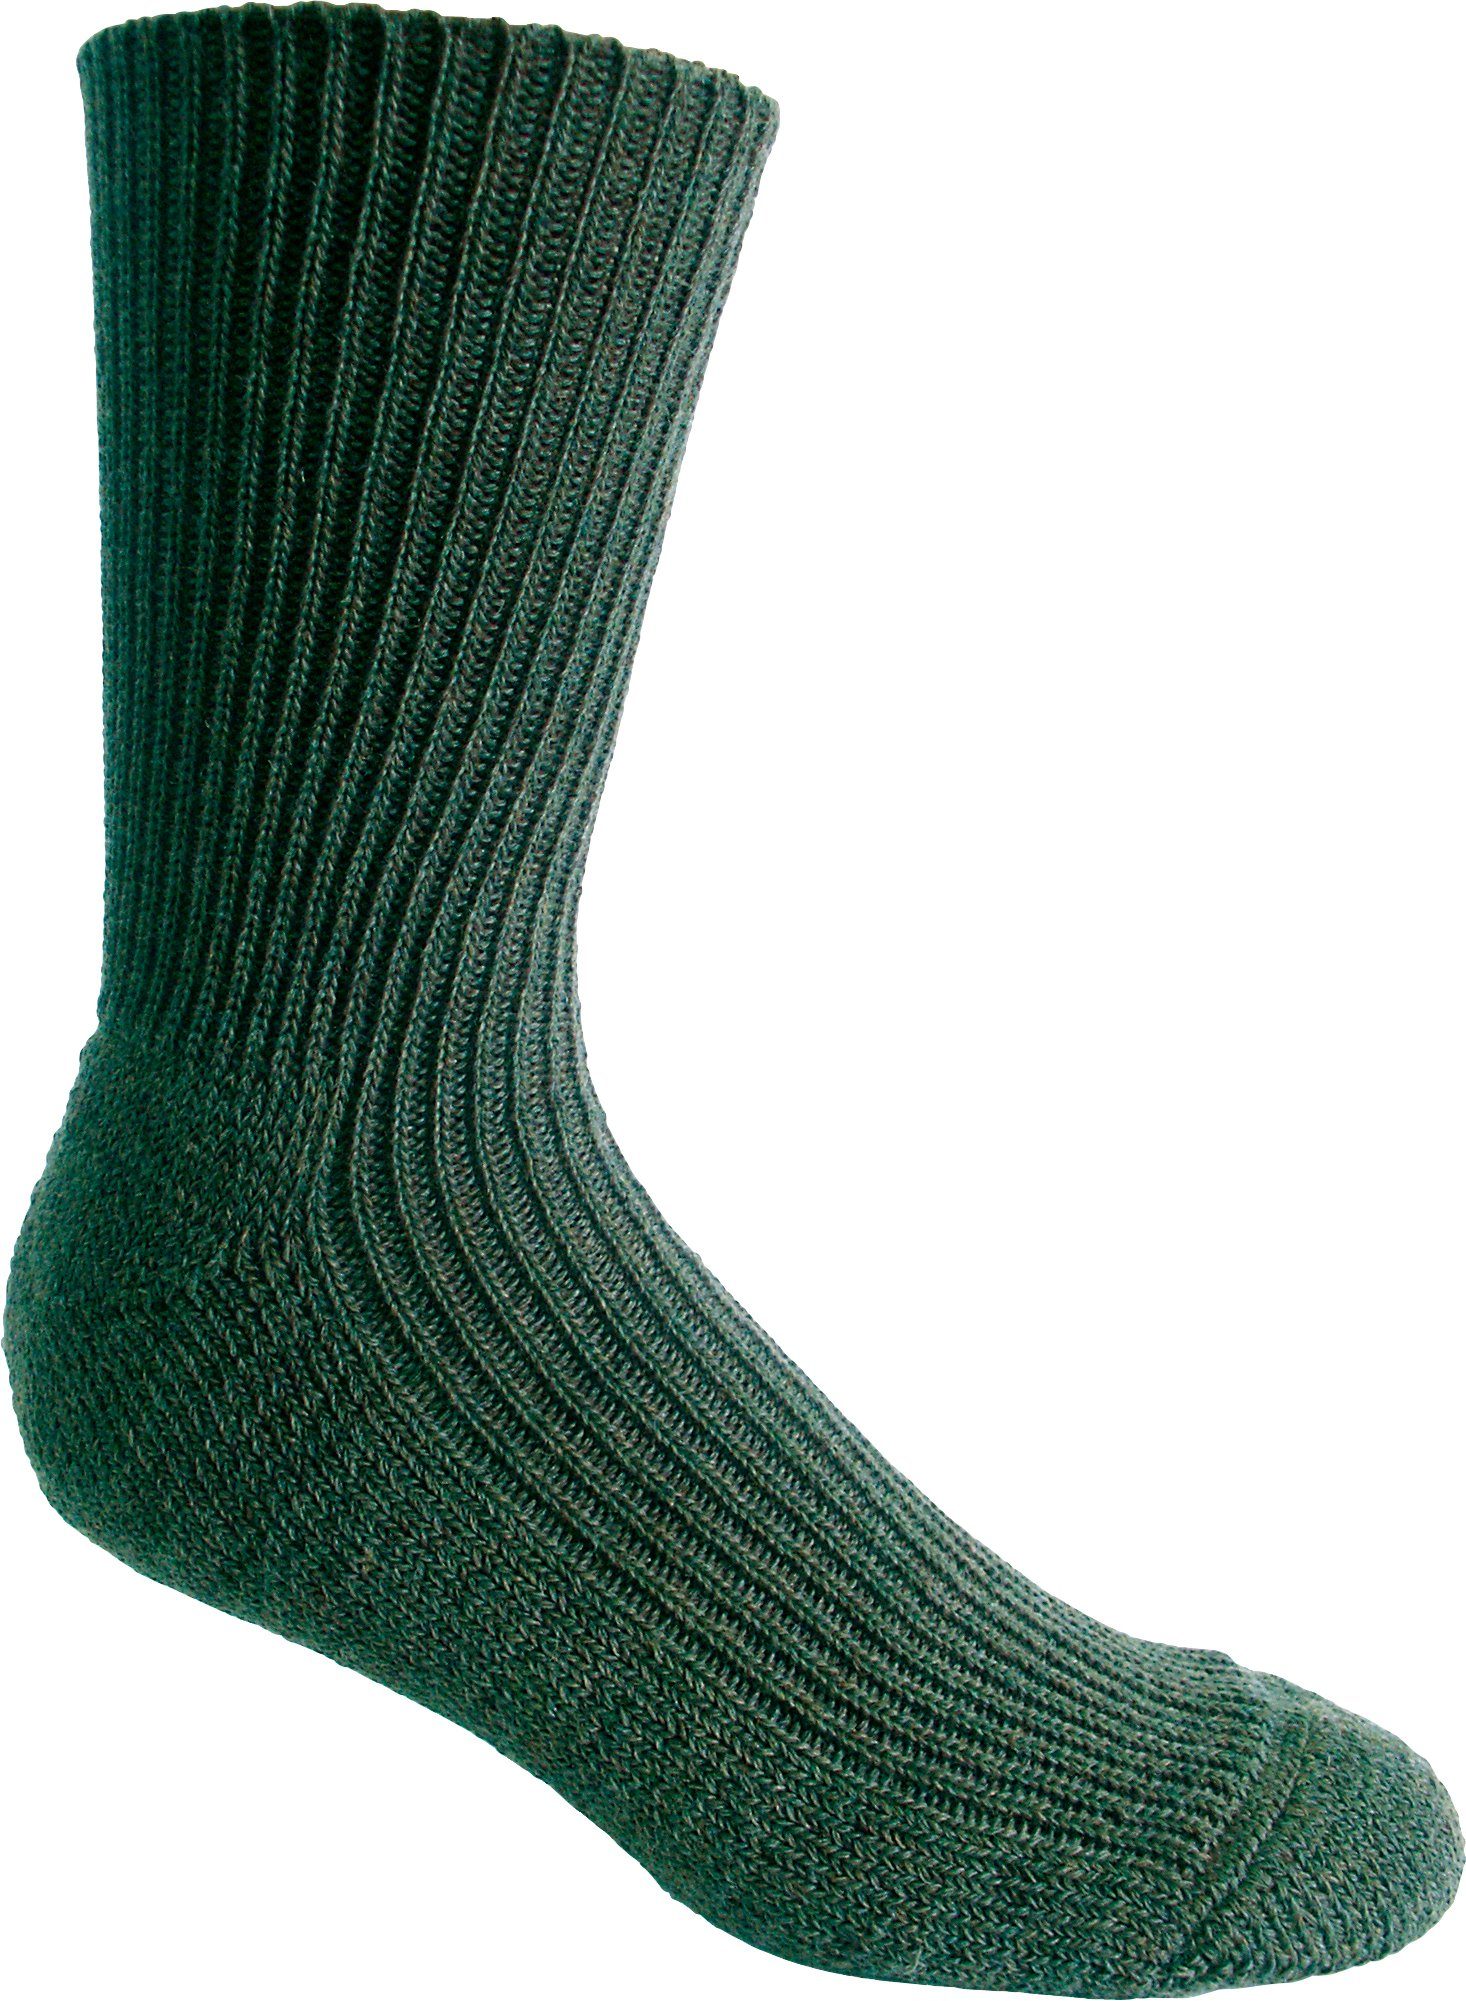 Wäsche/Bademode Socken Nordpol Gesundheitssocken Gesundheitssocke (Set, 2-Paar) kurz, grün